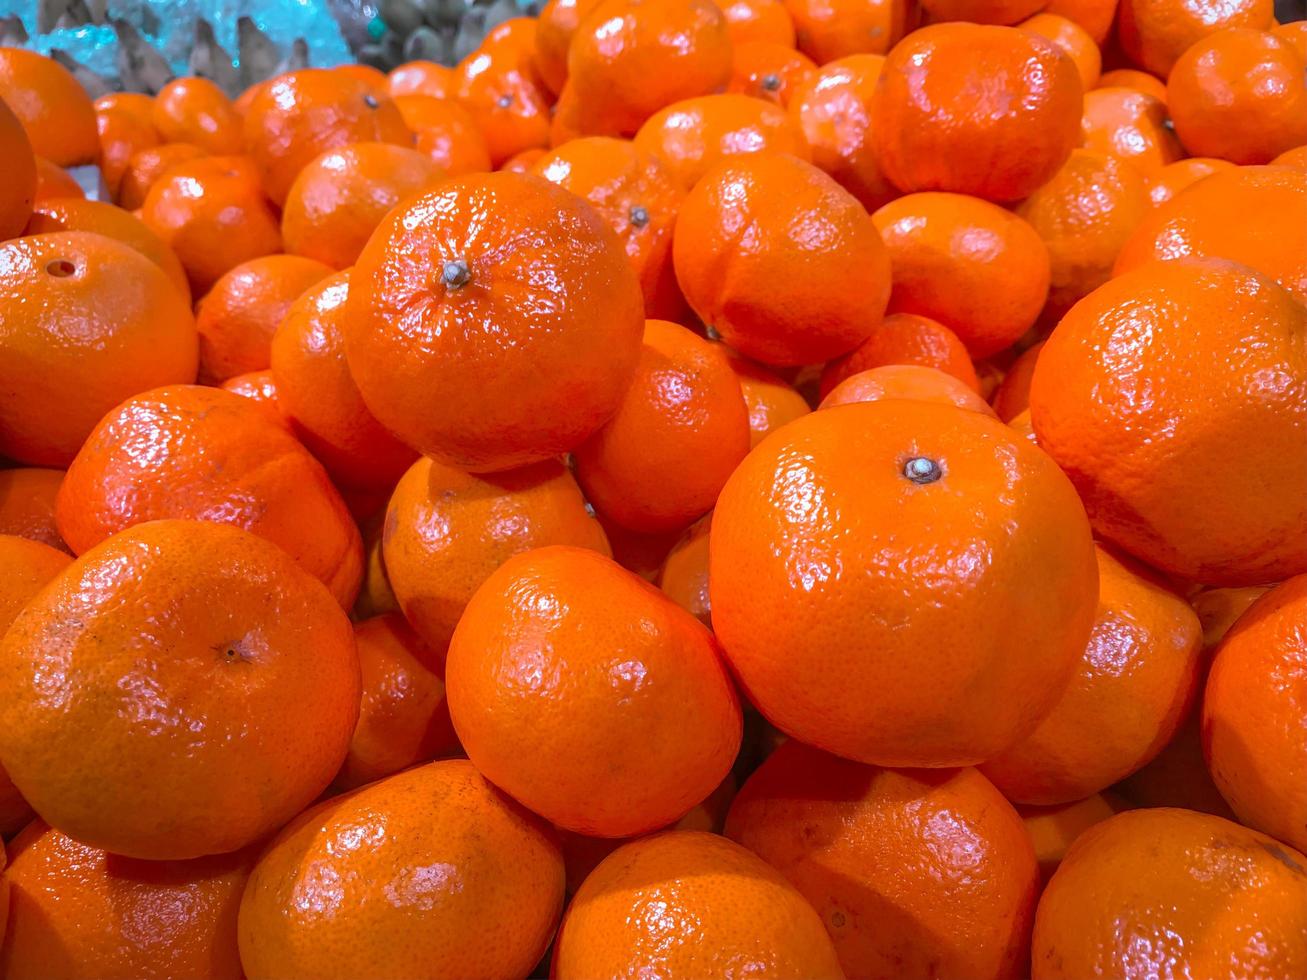 mandarinas em um supermercado. foto